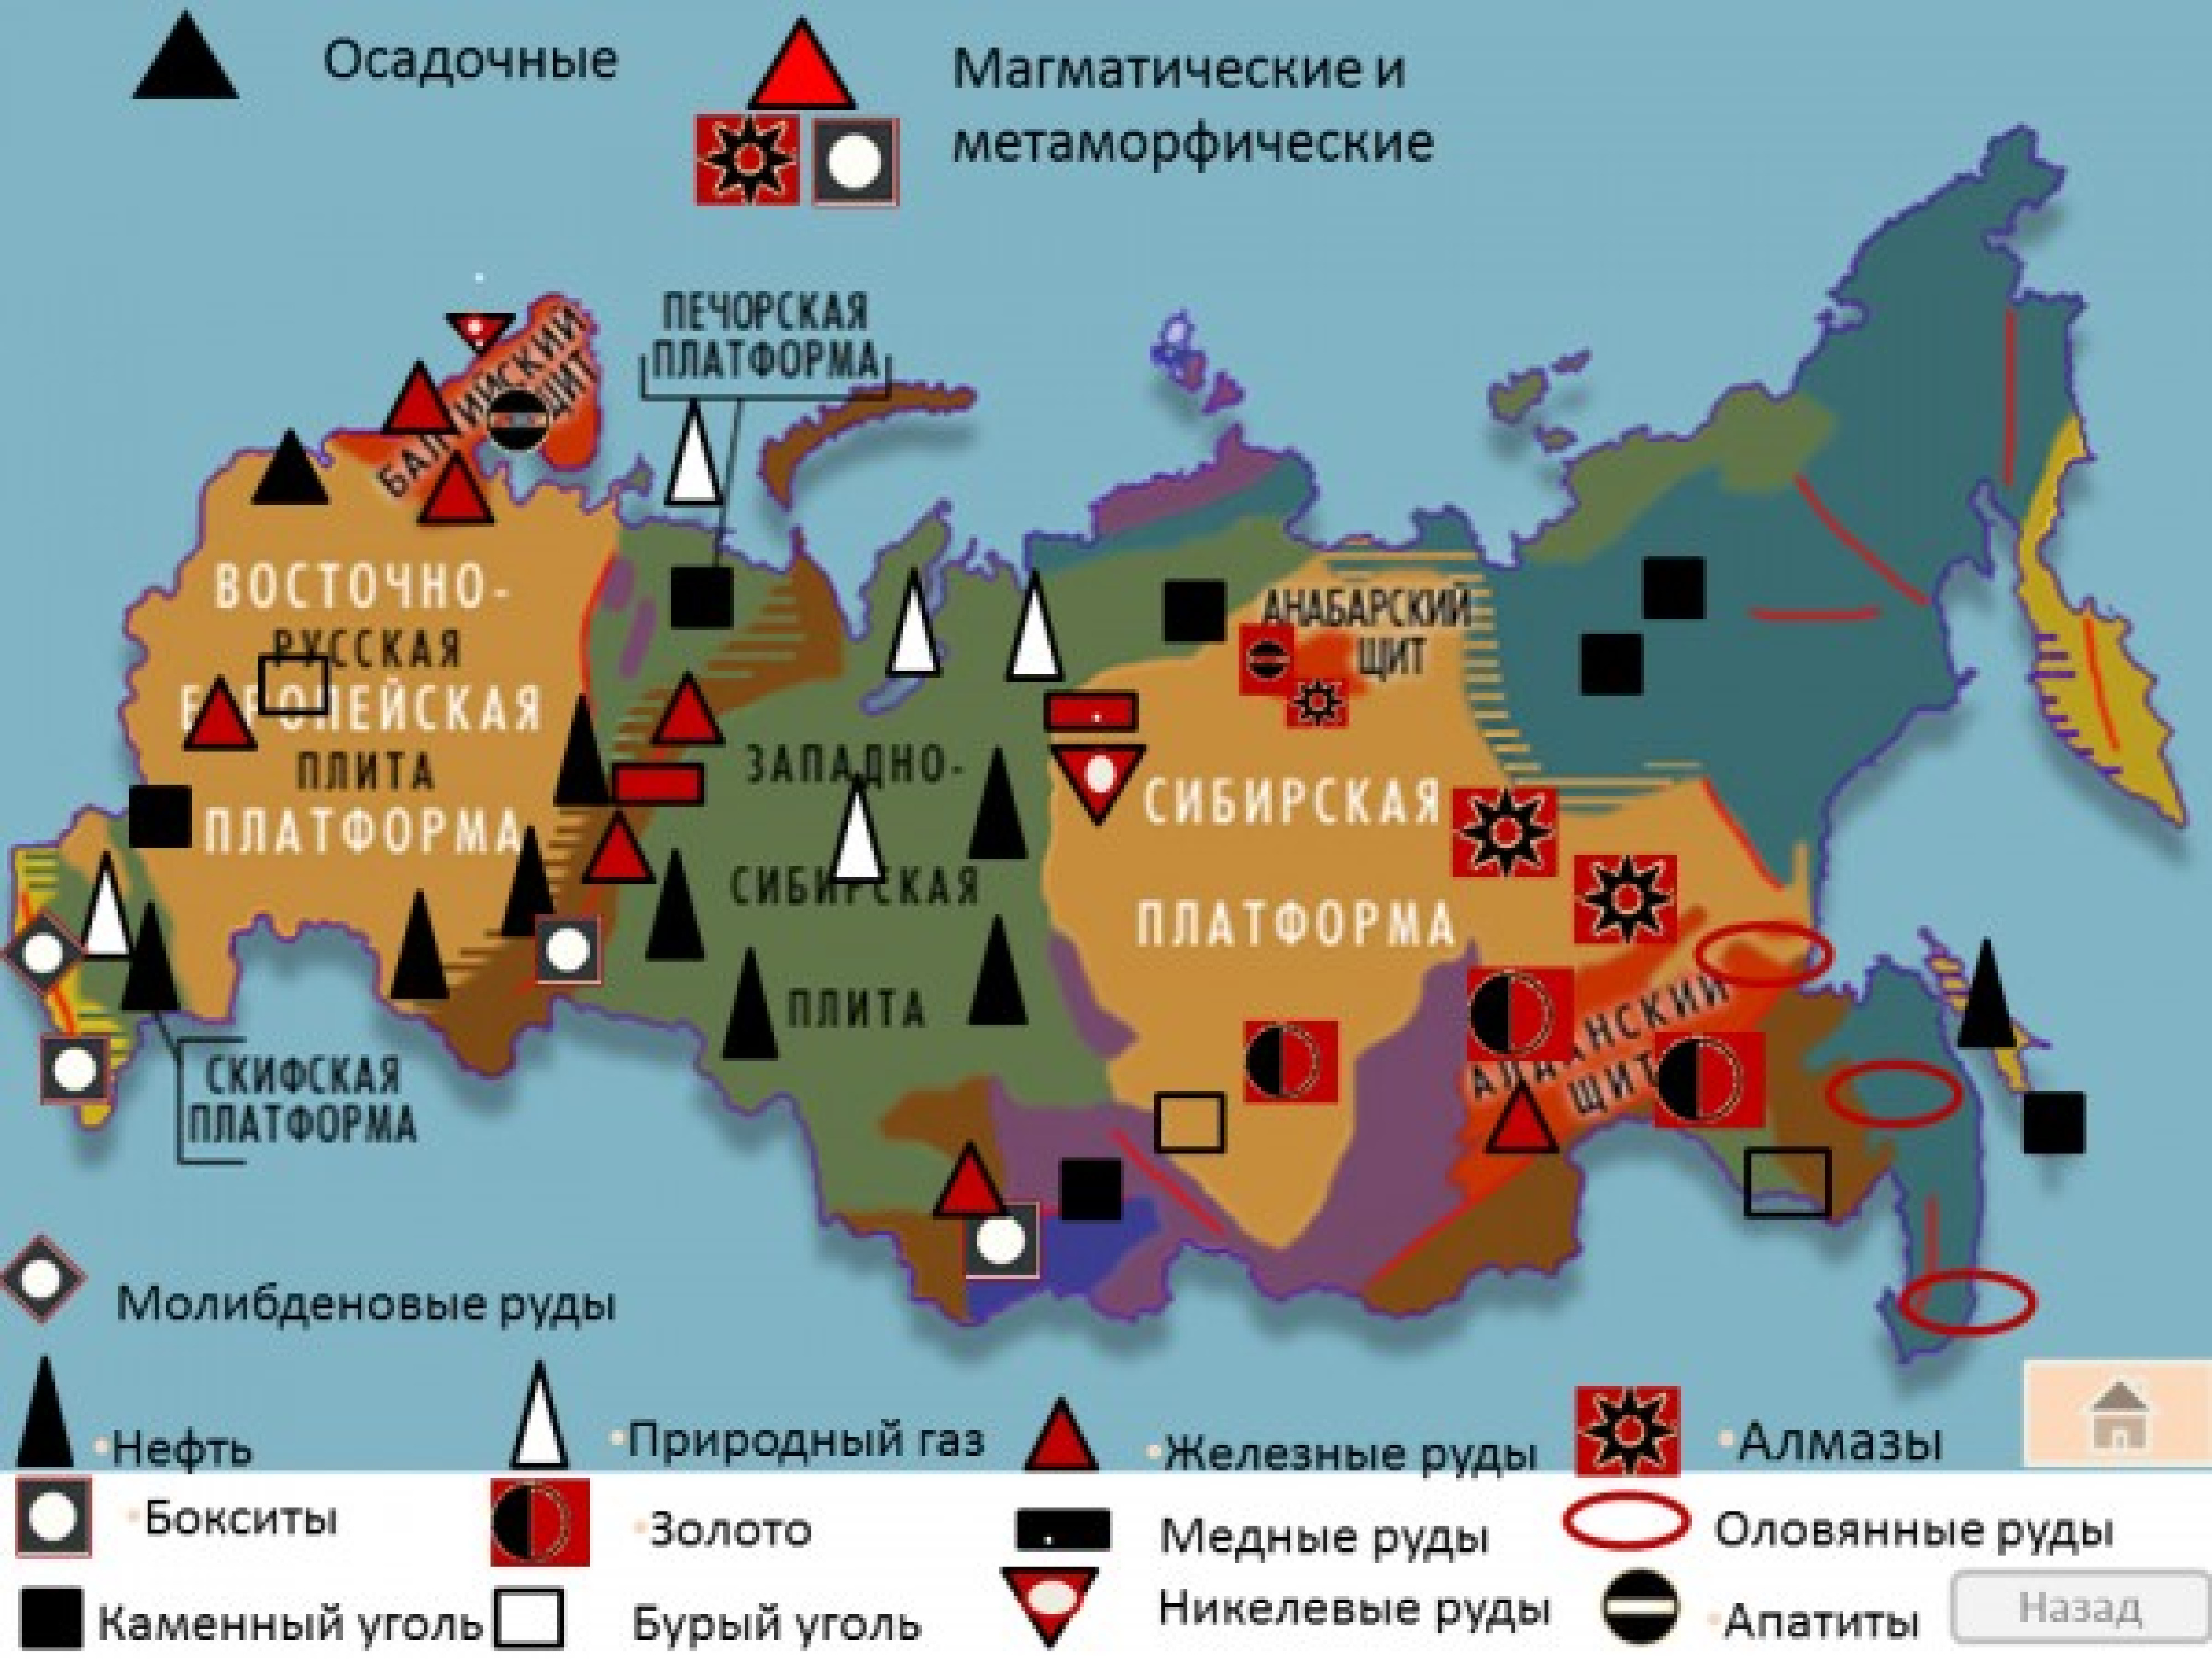 Основные районы и месторождения полезных ископаемых России